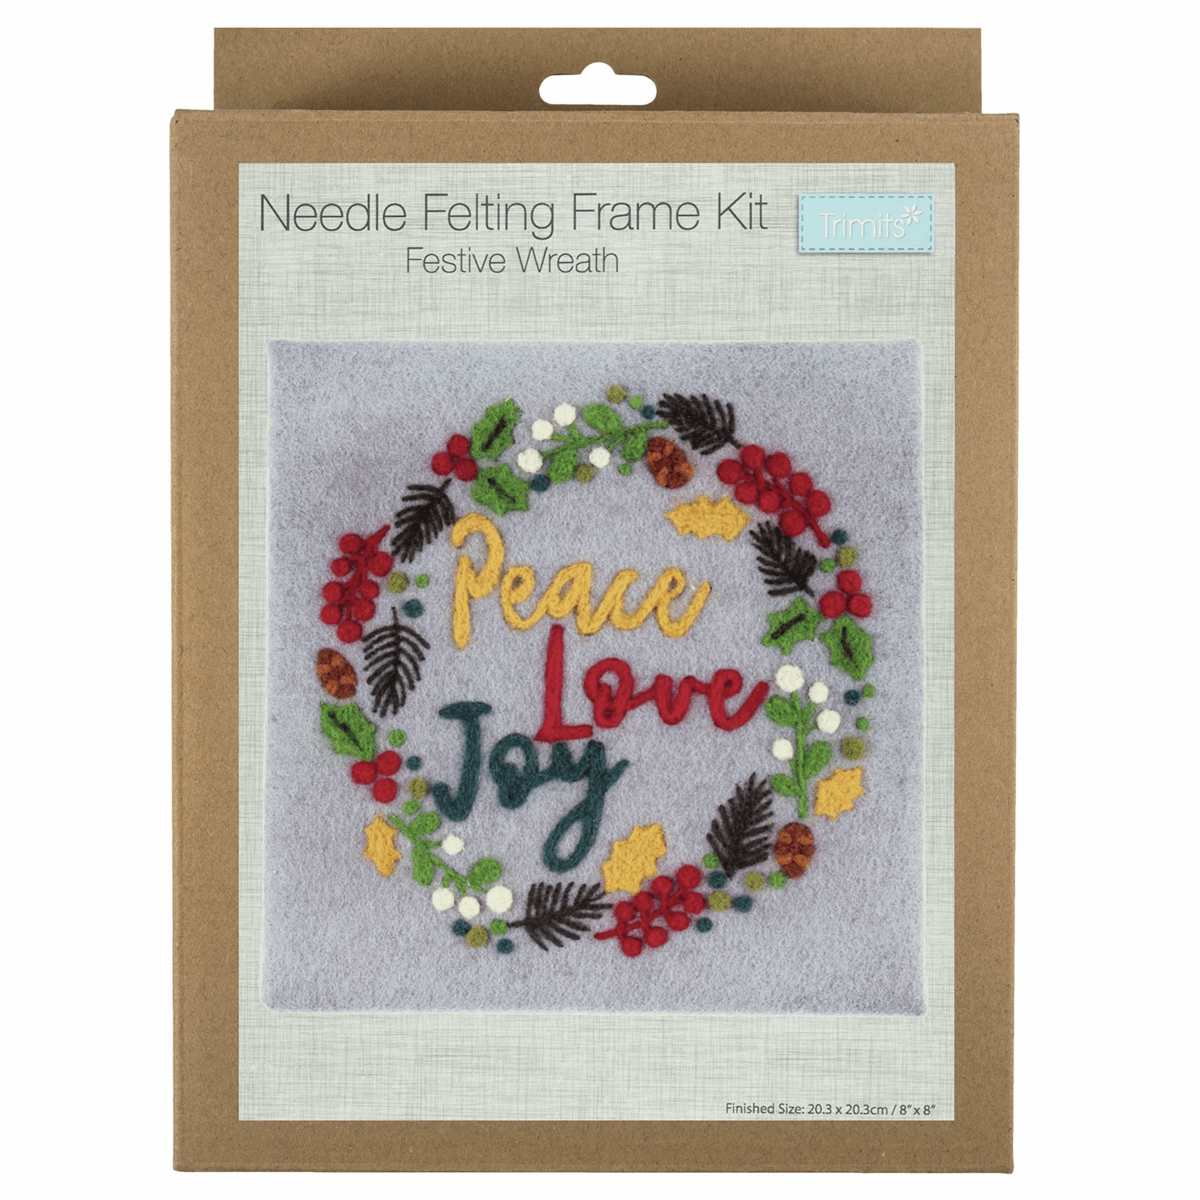  Needle Felting Kit with Frame: Festive Wreath